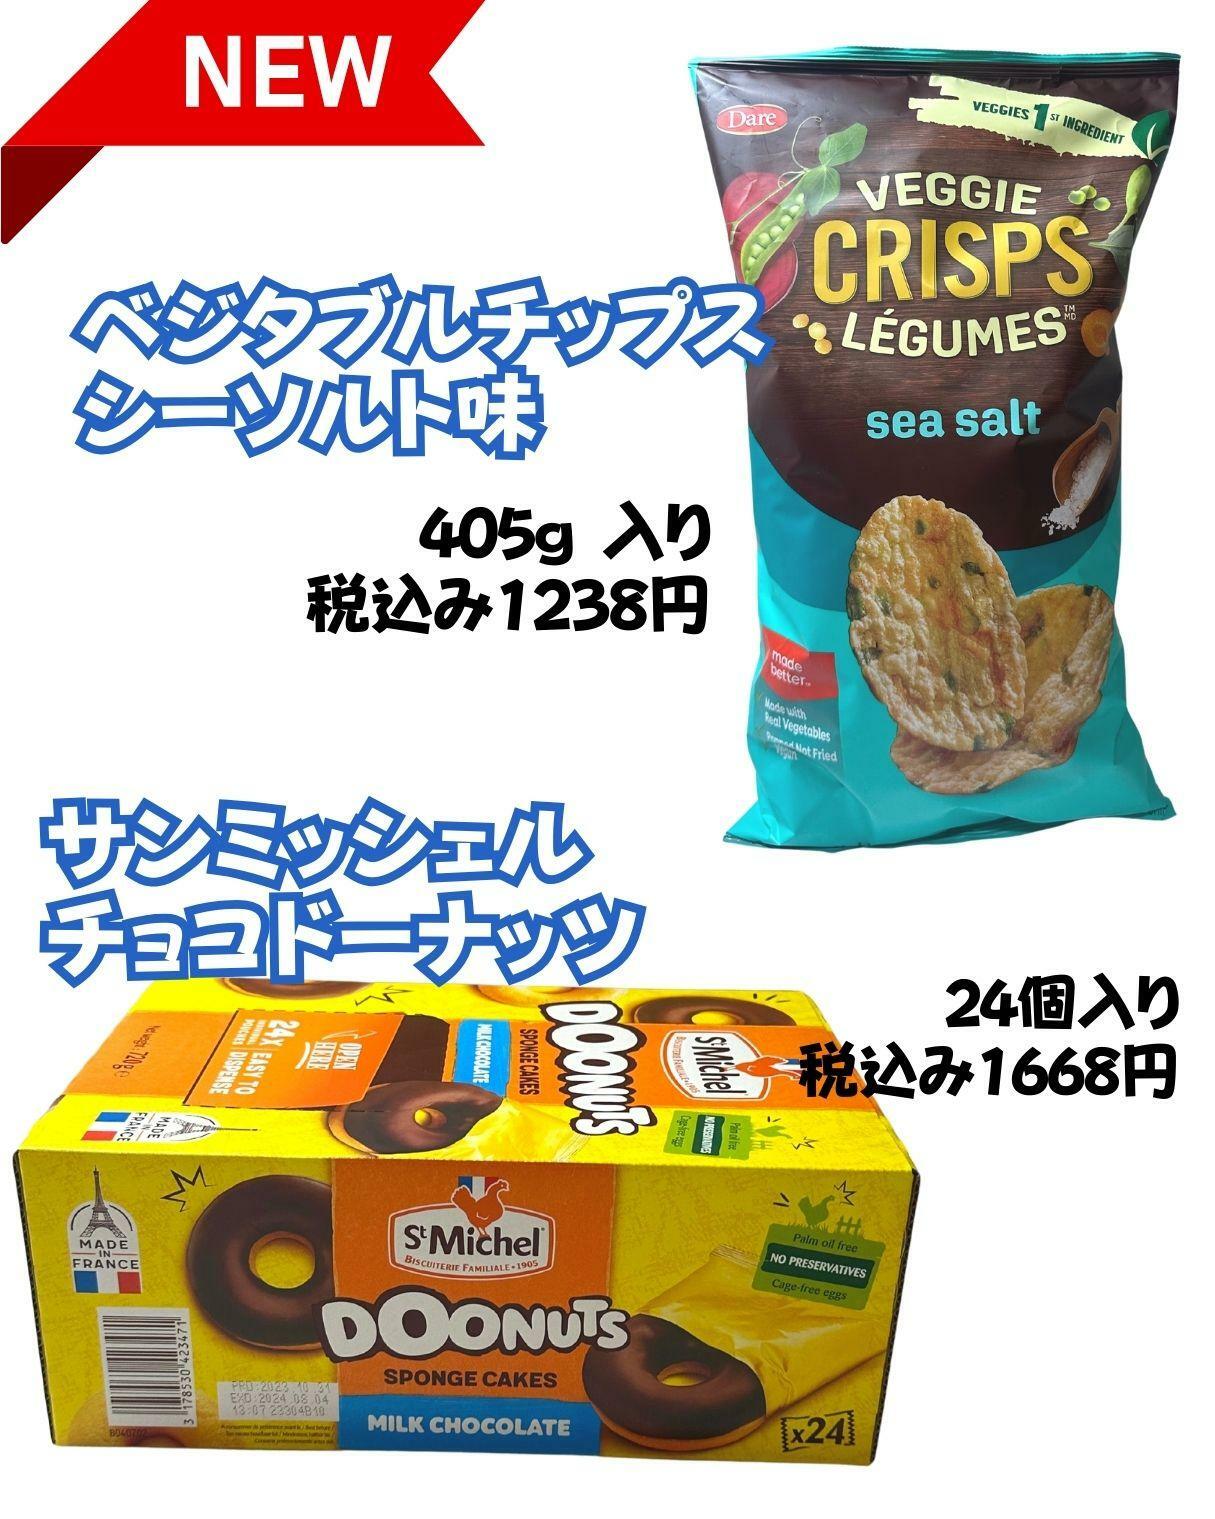 【コストコ】新商品ベジタブルチップス/サンミッシェルチョコドーナッツ